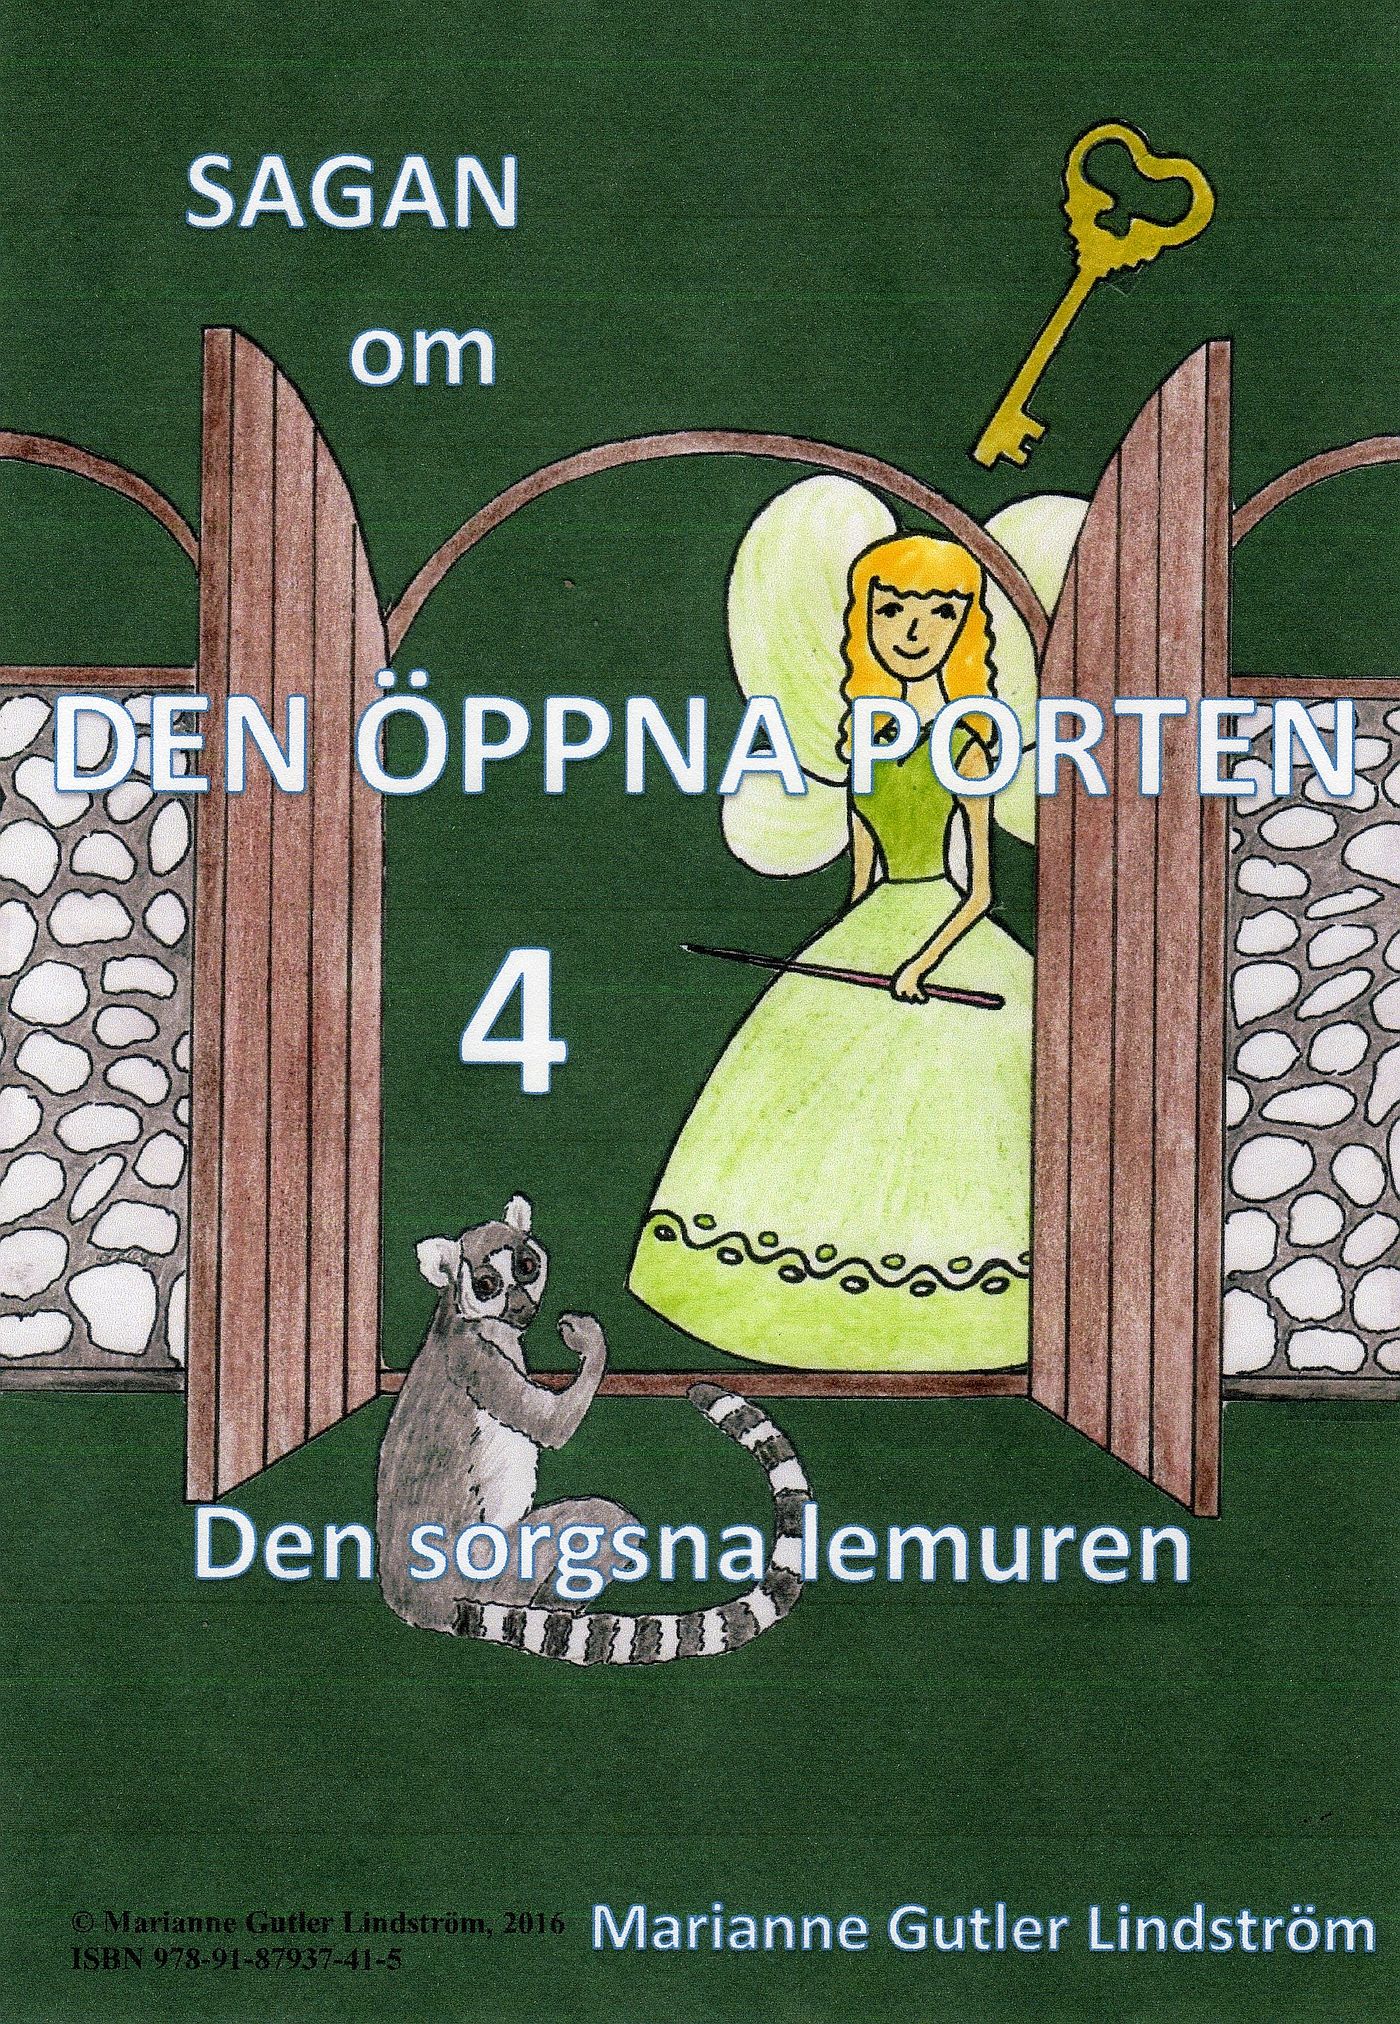 Sagan om den öppna porten 4. Den sorgsna lemuren, e-bog af Marianne Gutler Lindström